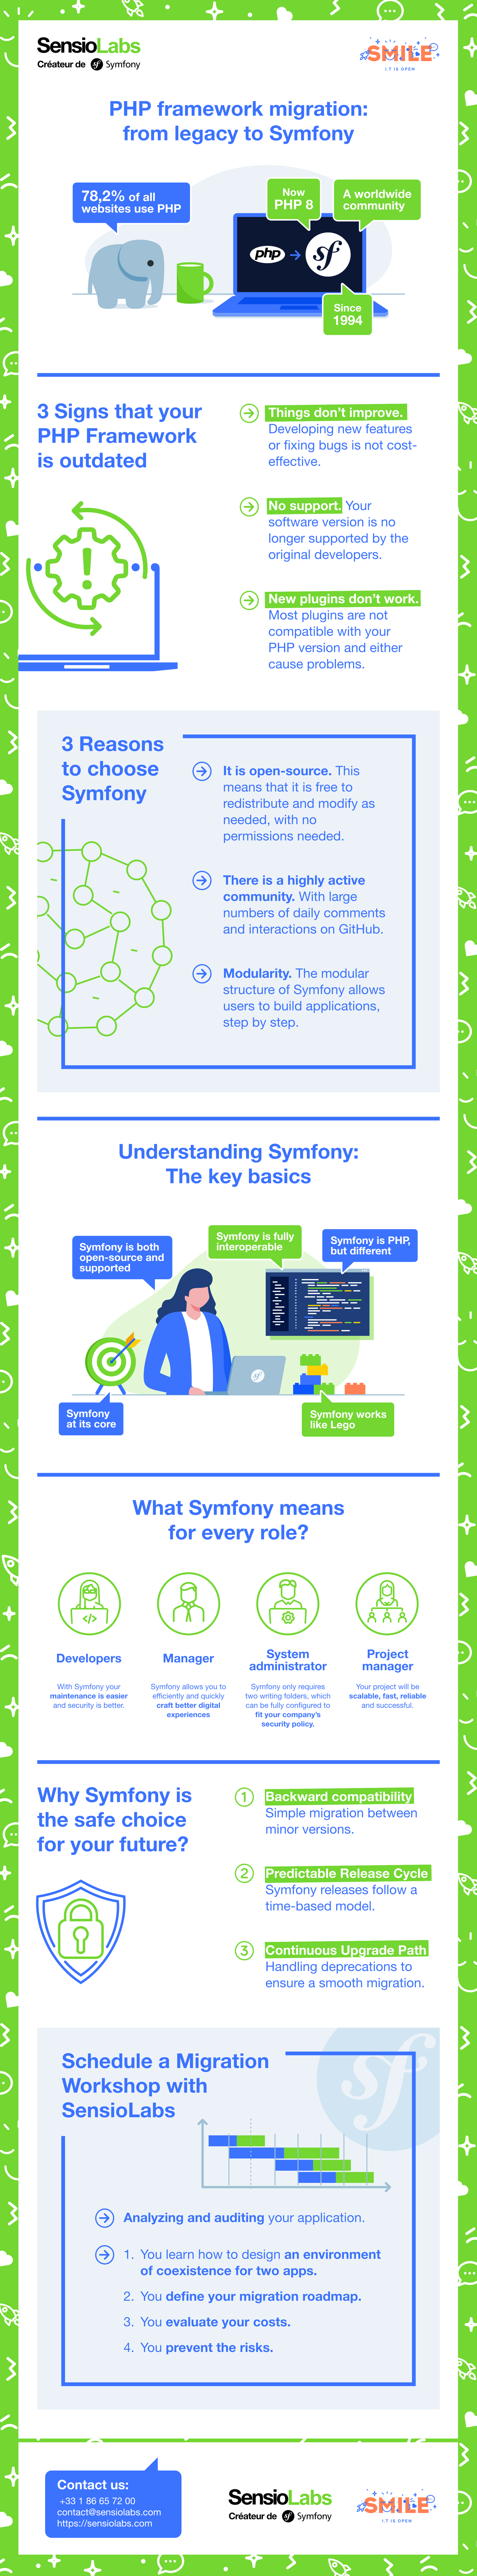 migrate-symfony-php-infographic